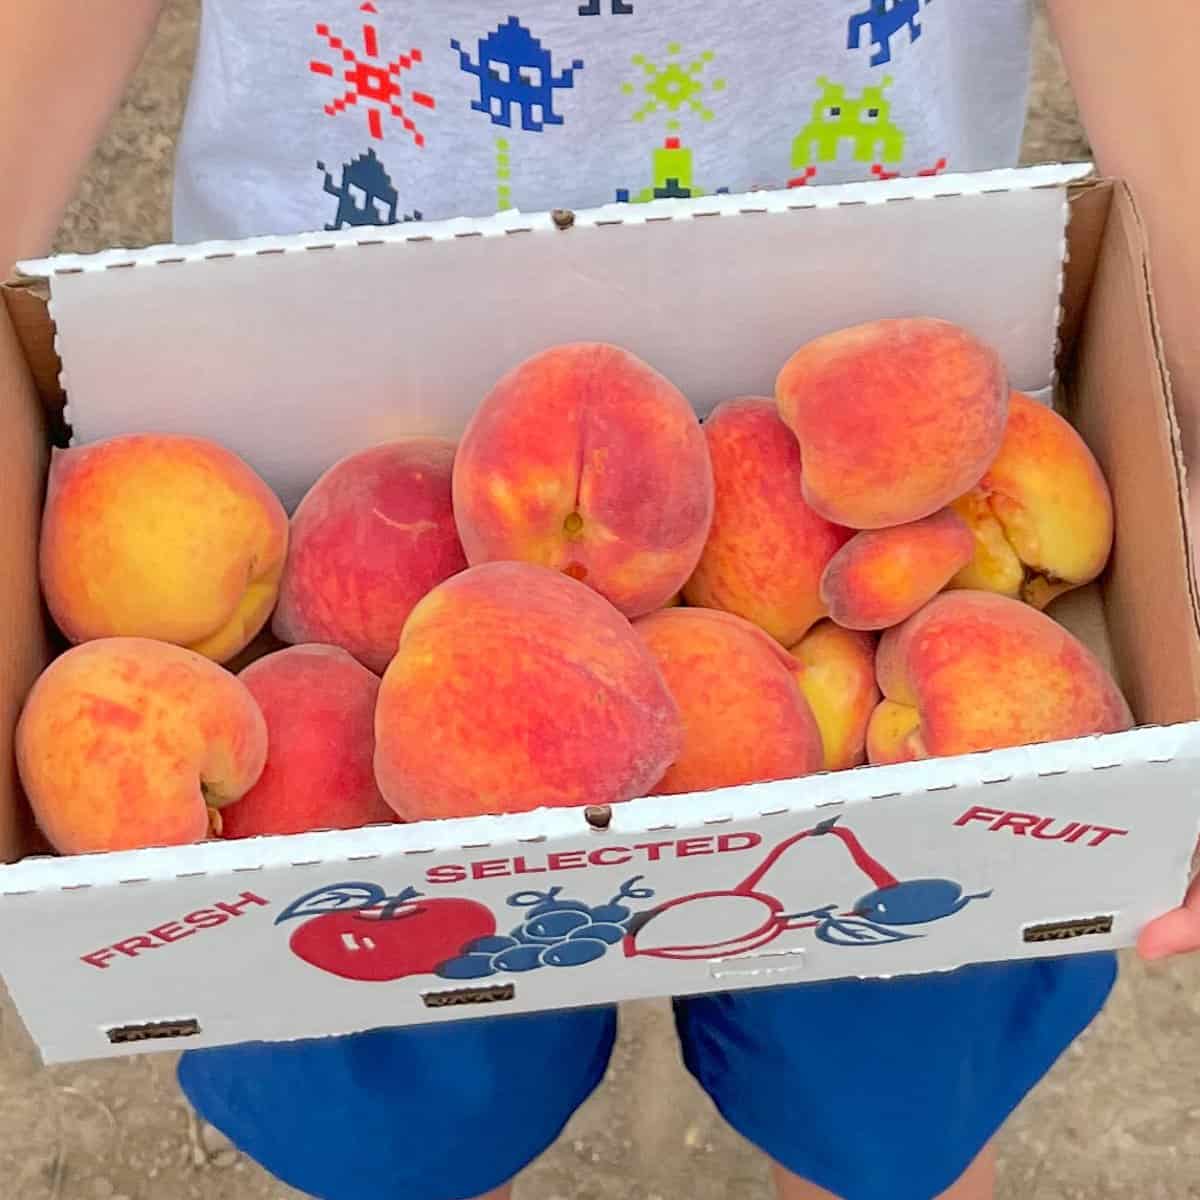 A box full of fresh peaches.